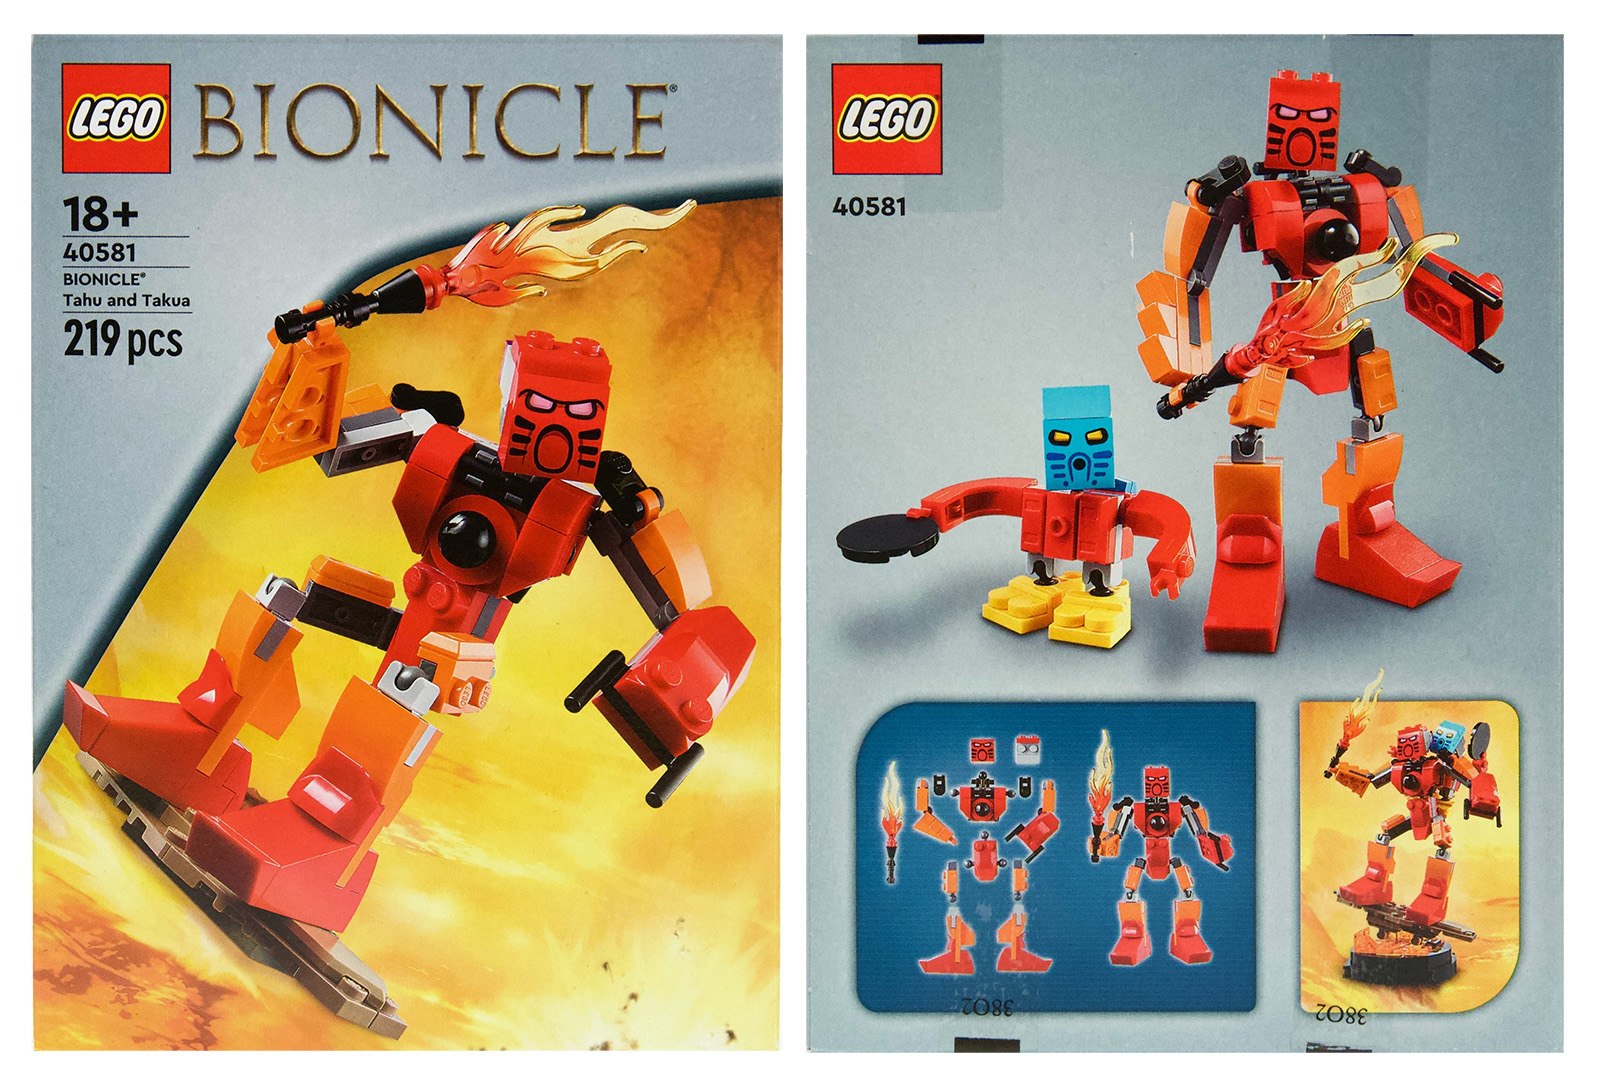 LEGO 40581 BIONICLE Таху и Такуа: първите визуални изображения на комплекта, налични от 27 януари 2023 г. в LEGO